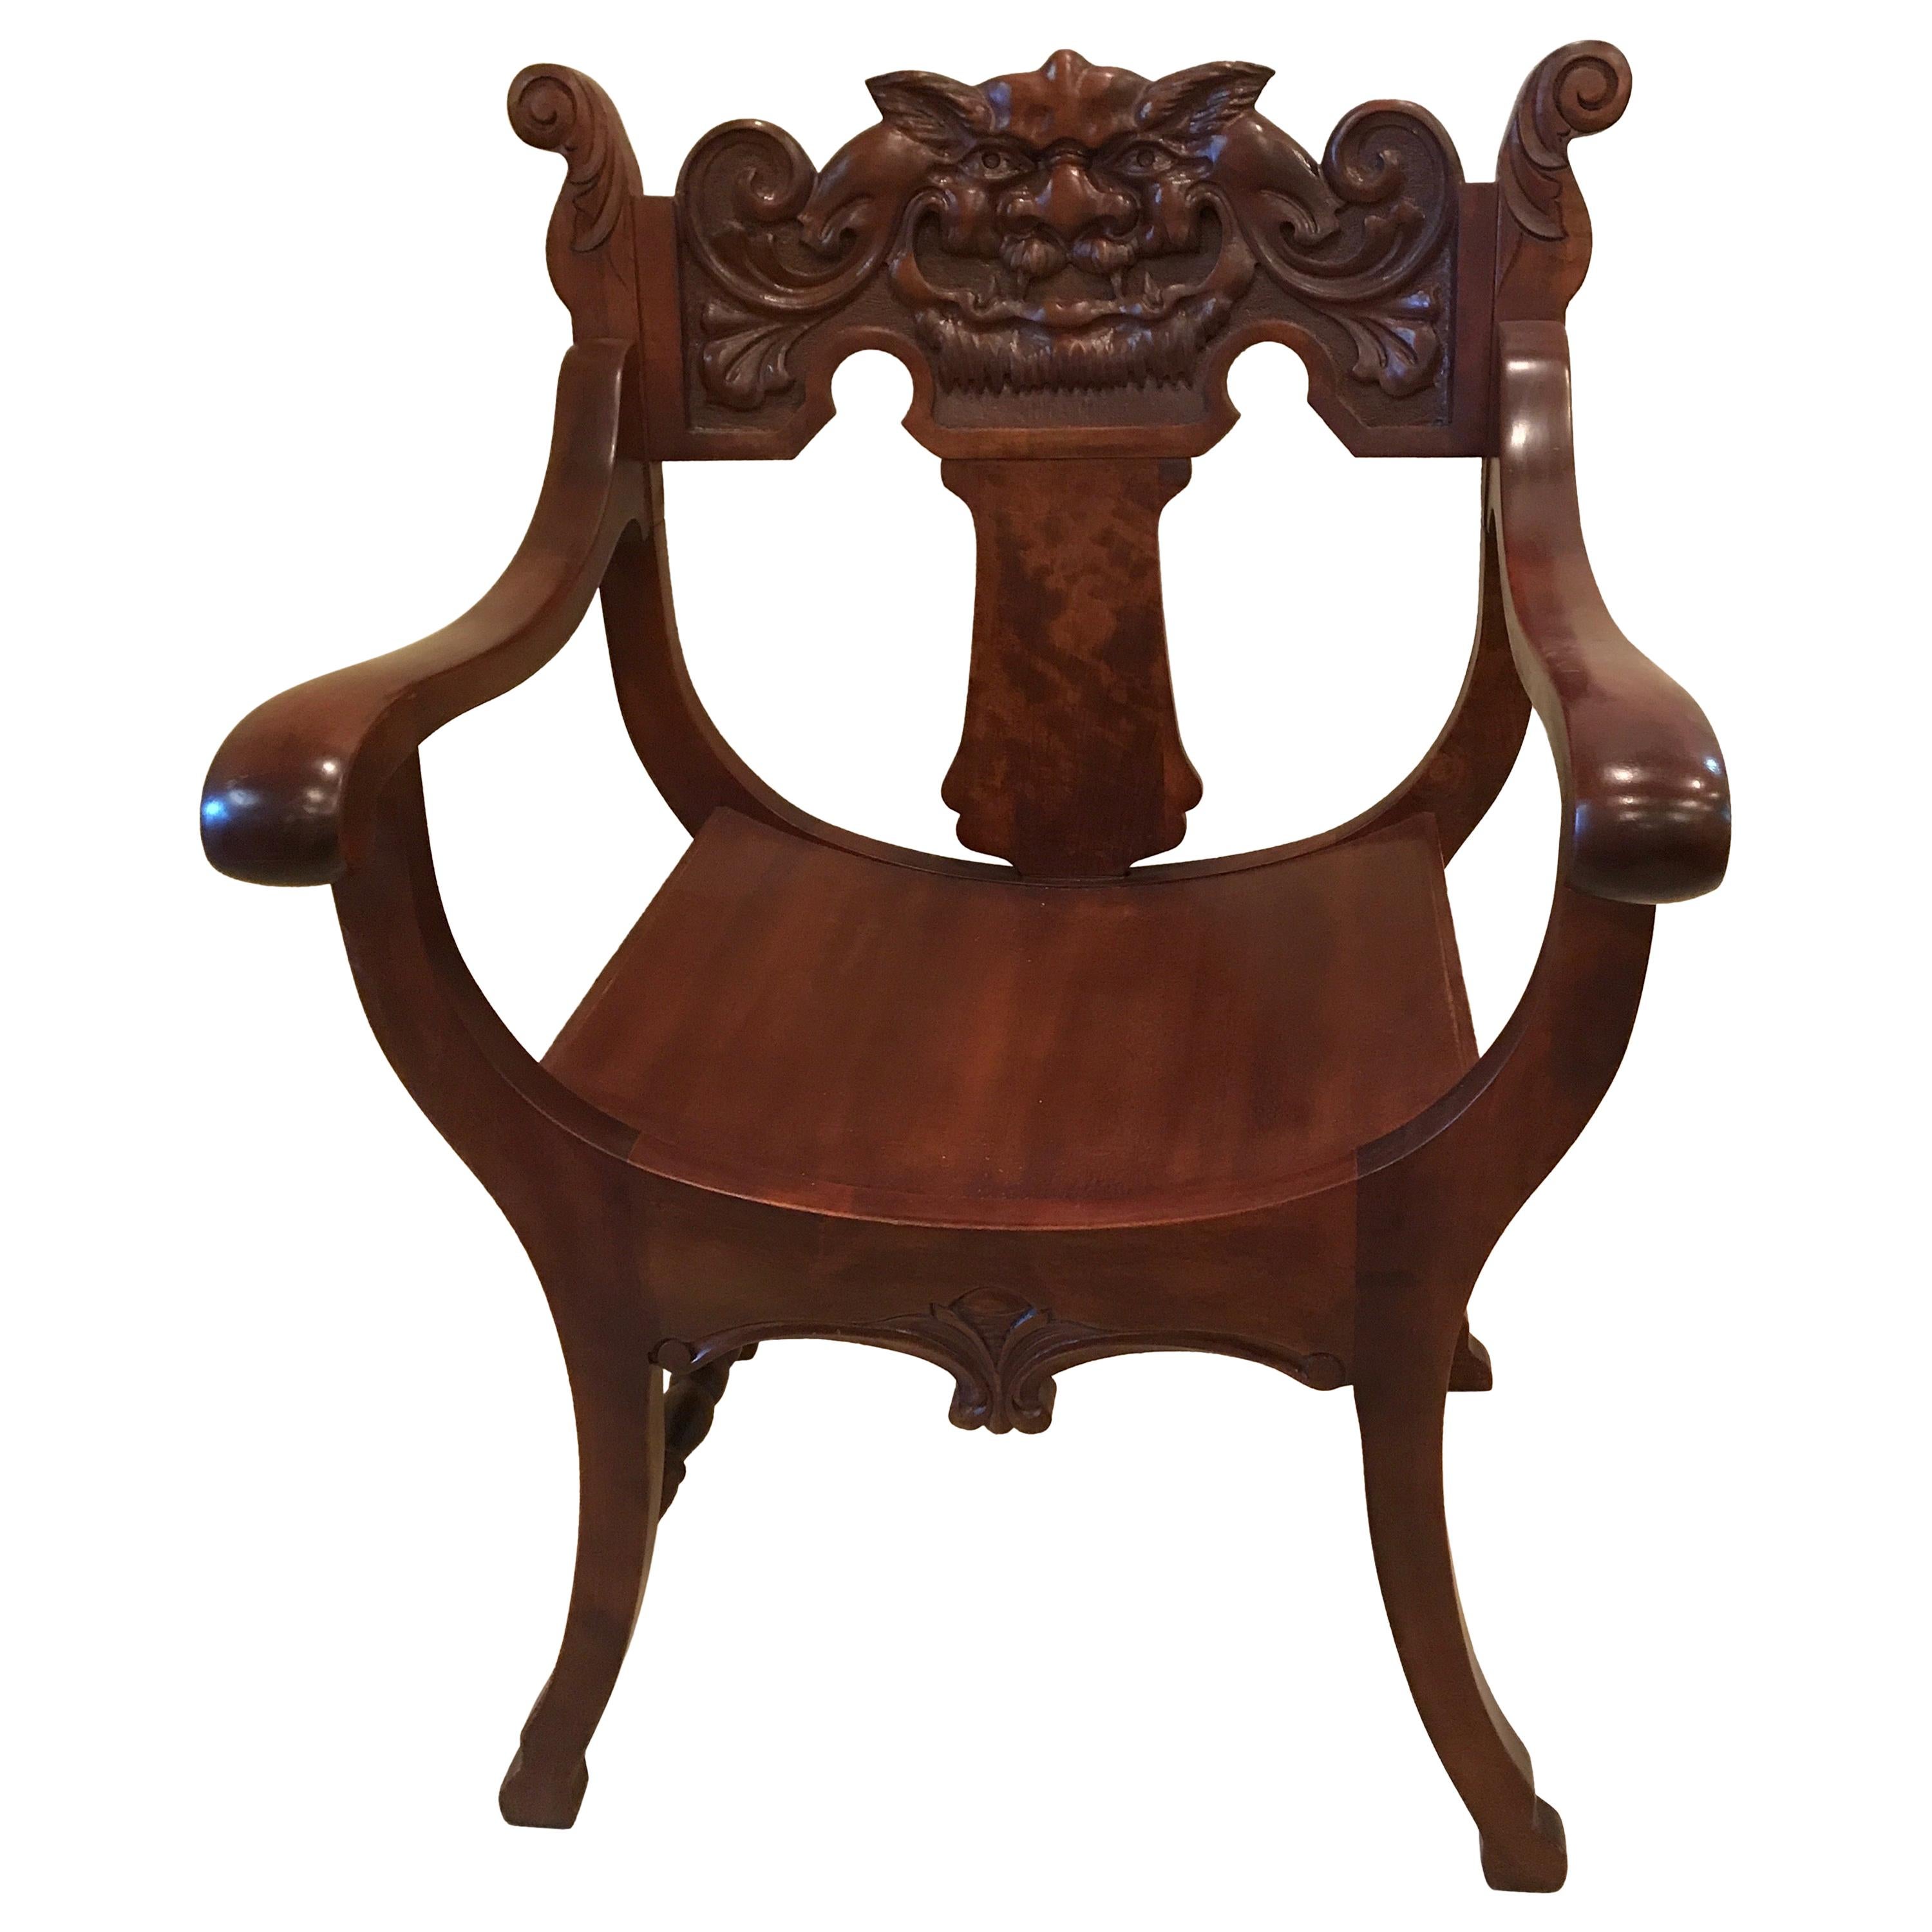 Chaise en bois sculpté de style gothique avec des figures mythologiques